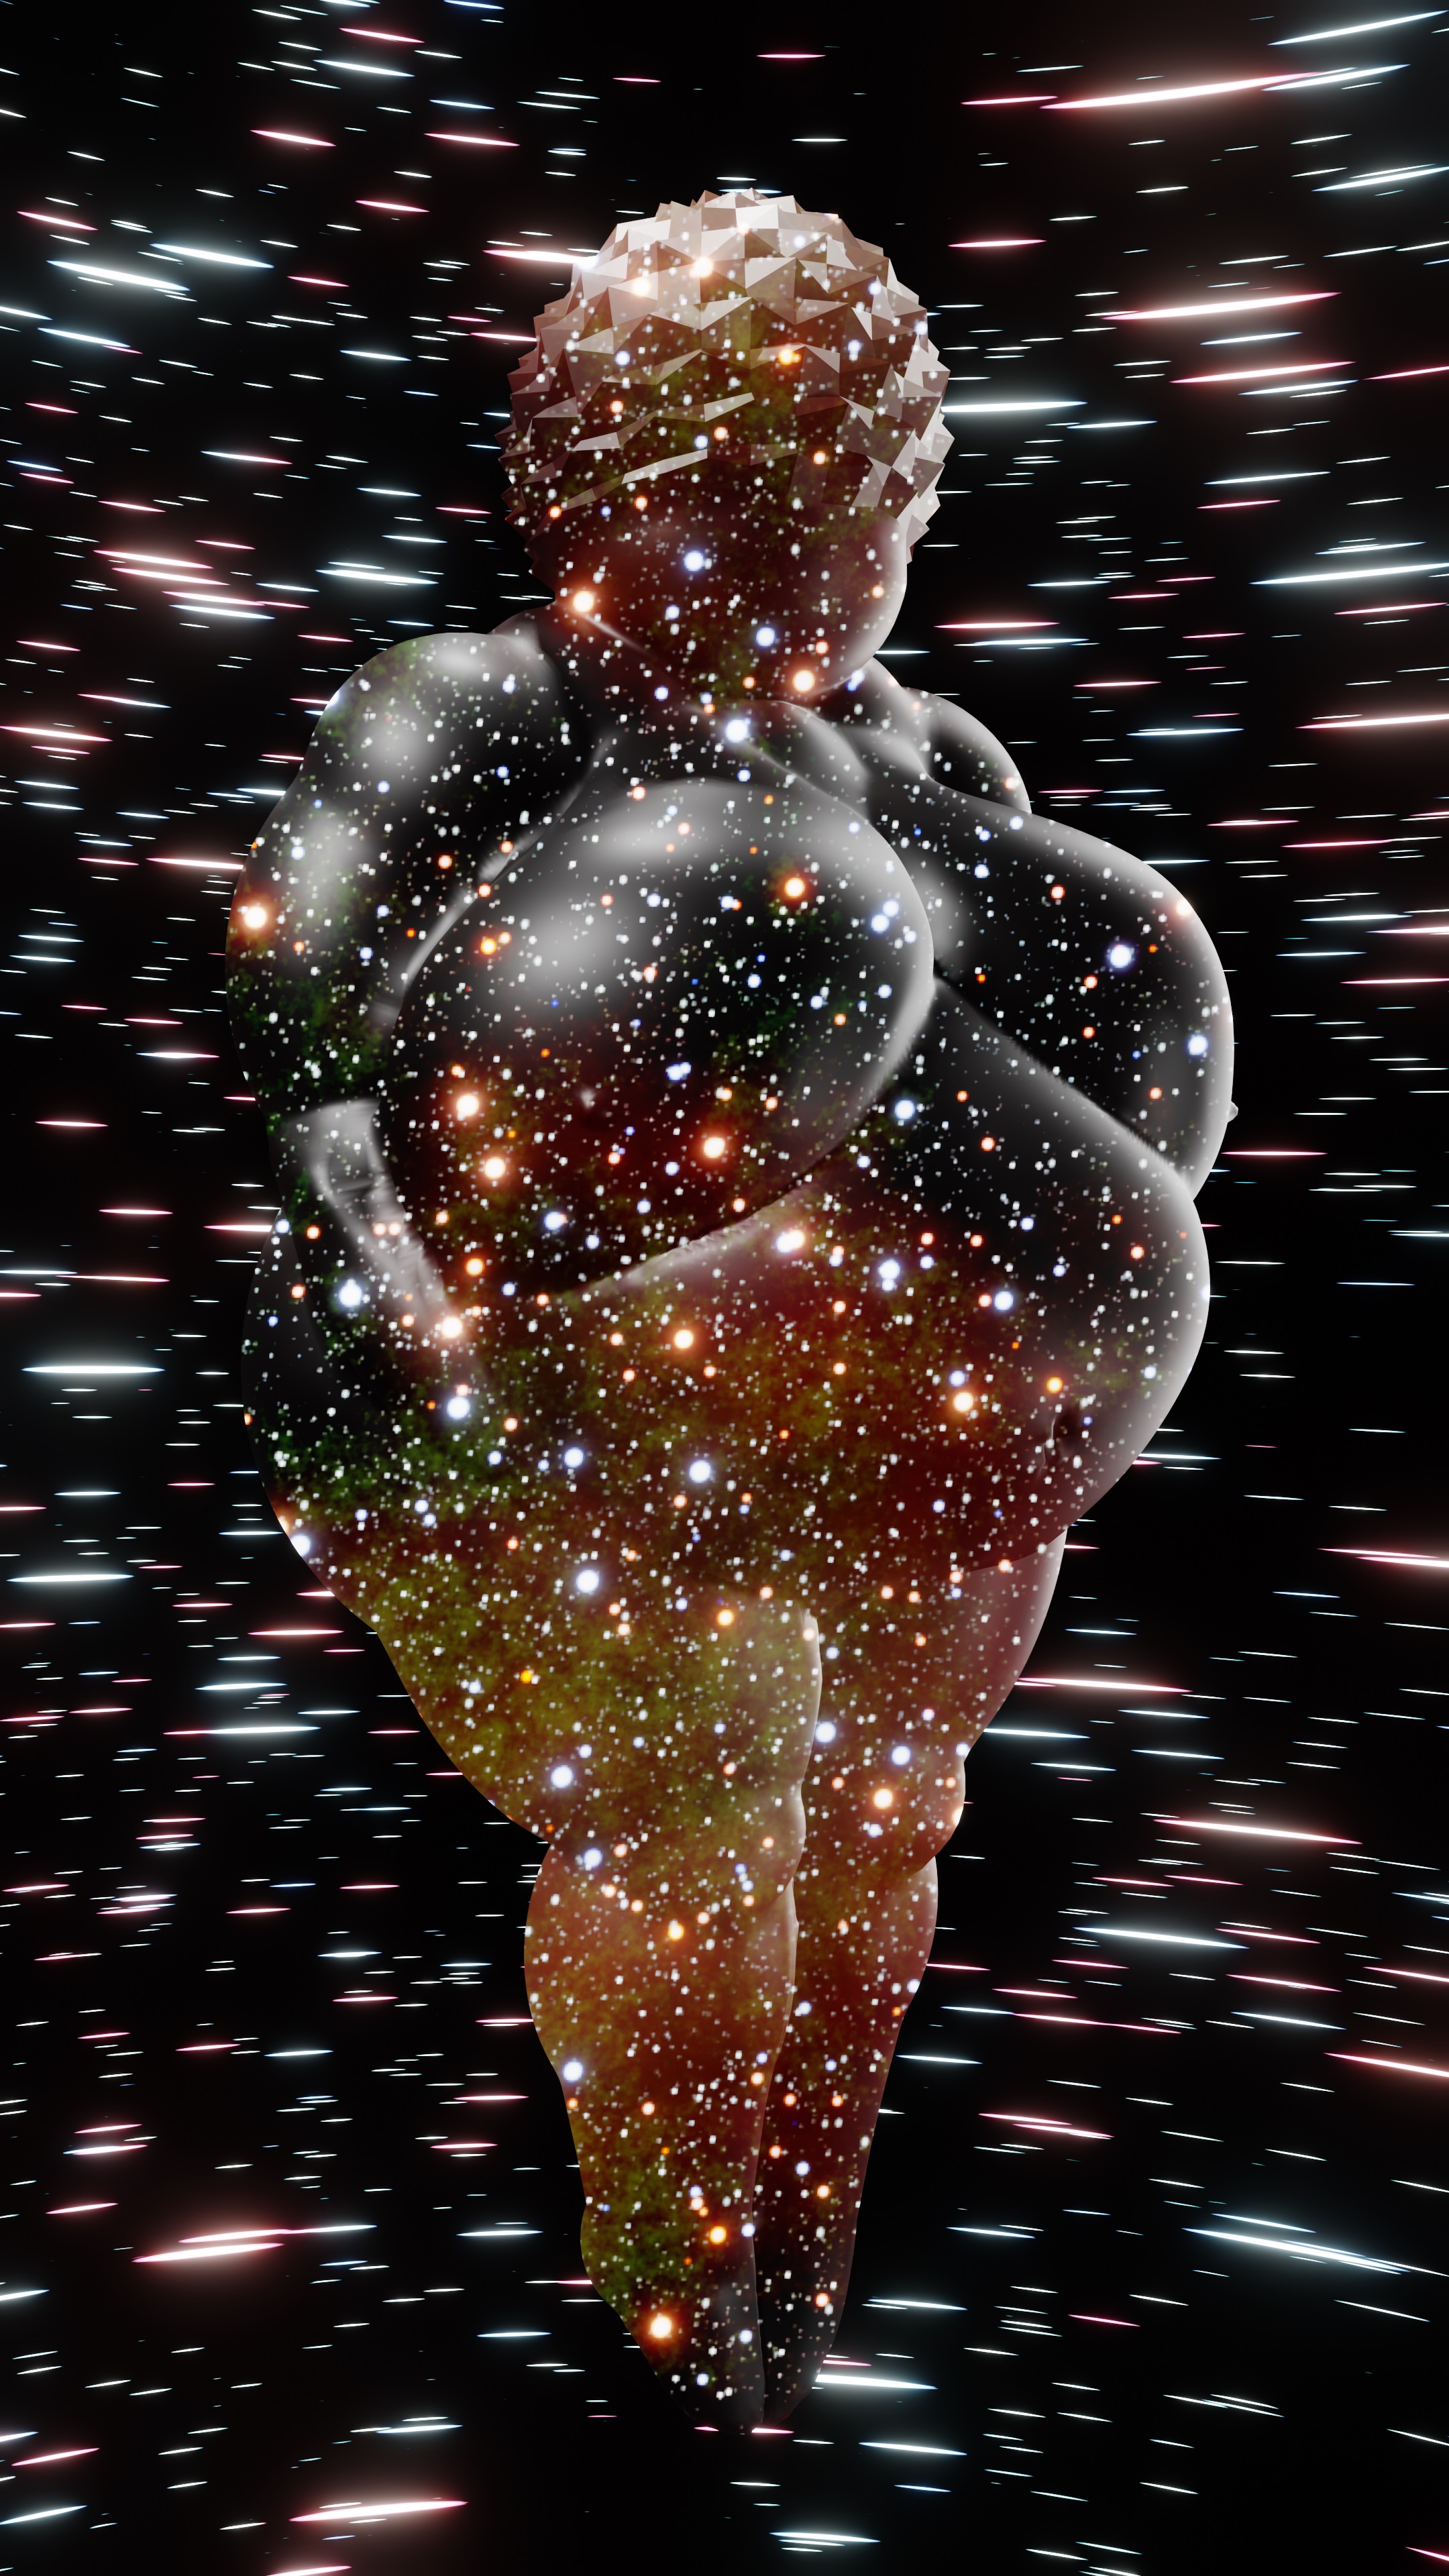 Venus of Willendorf #035